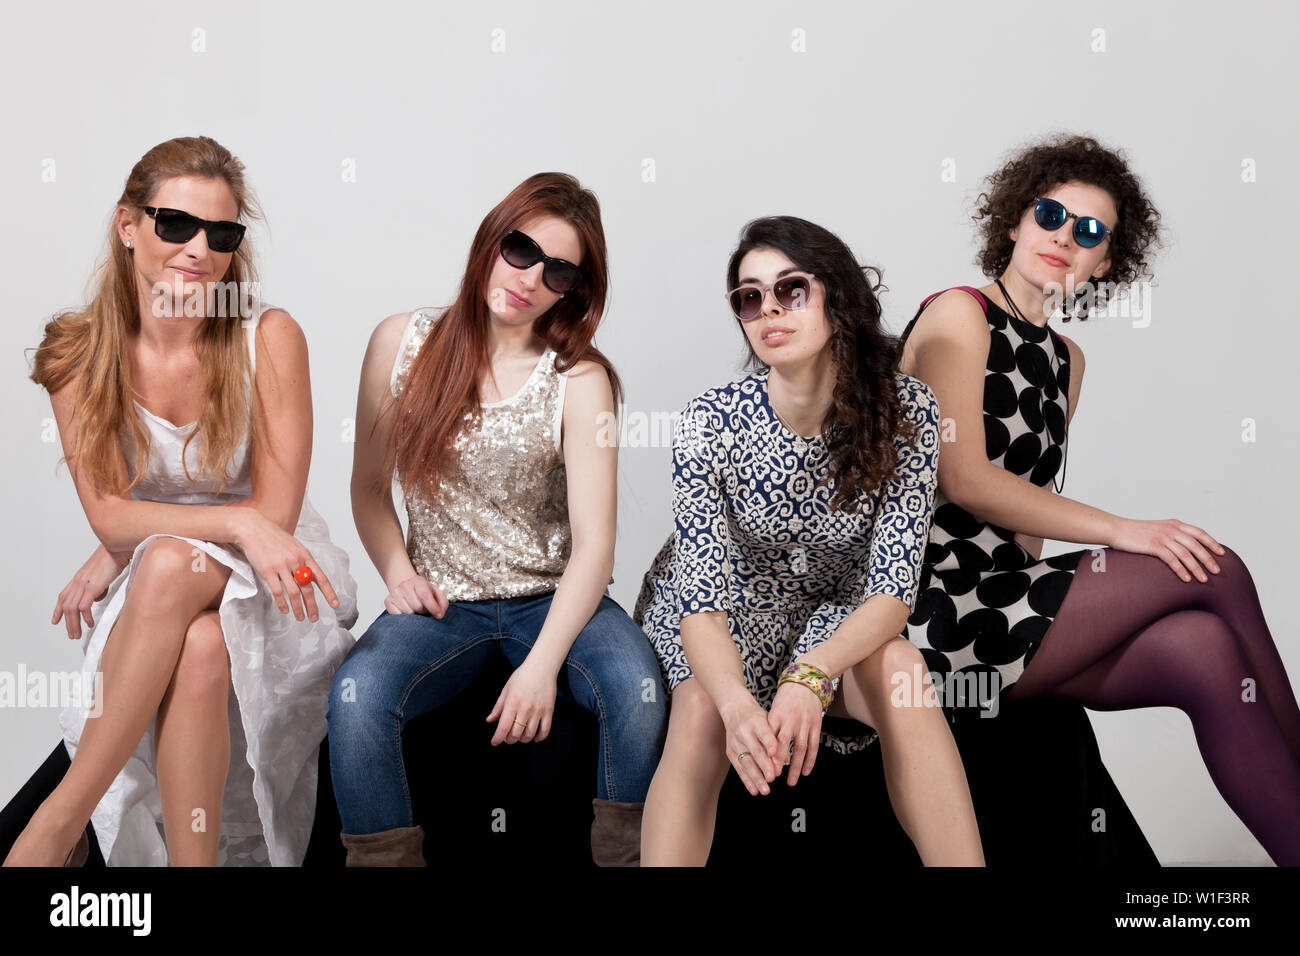 Quatre belles femmes posent ensemble en studio Banque D'Images